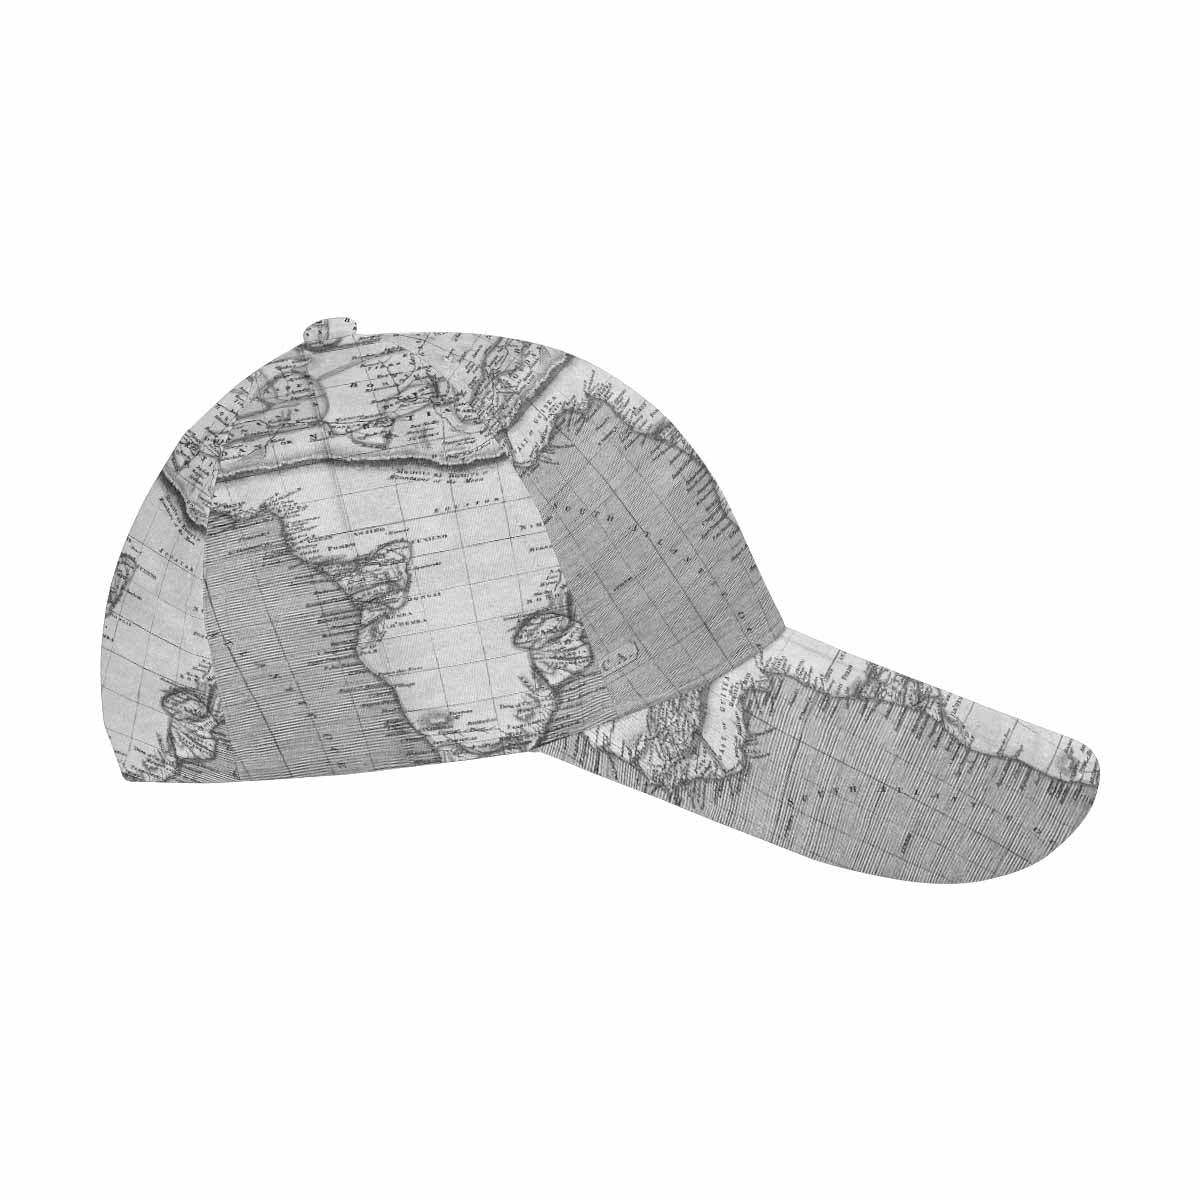 Antique Map design dad cap, trucker hat, Design 2